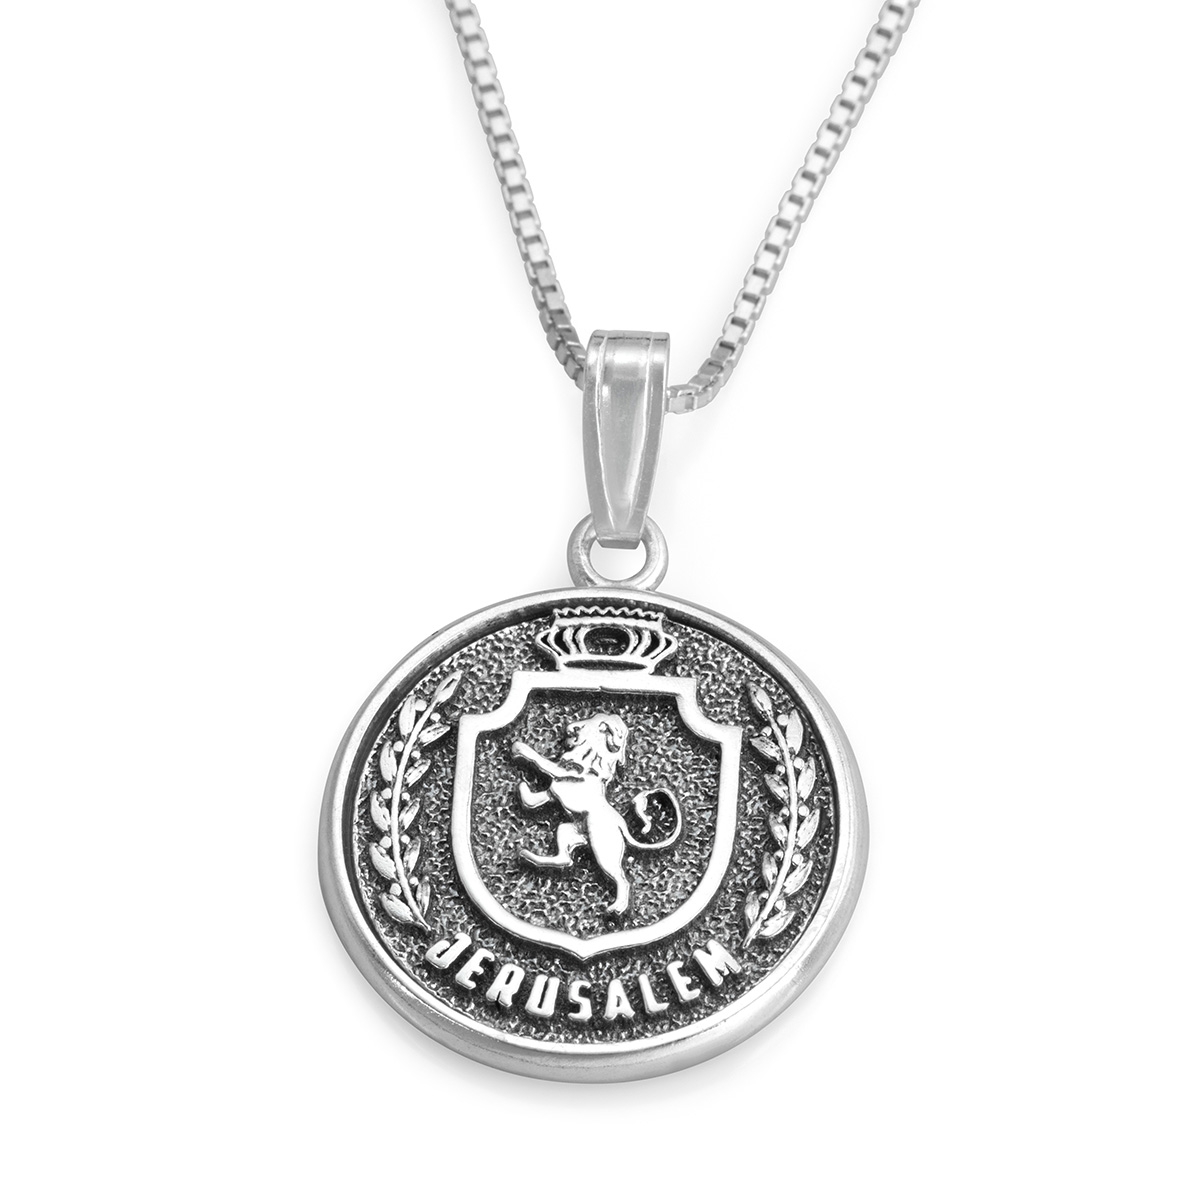 Handcrafted Sterling Silver Medallion Necklace With Jerusalem Emblem Design - 1